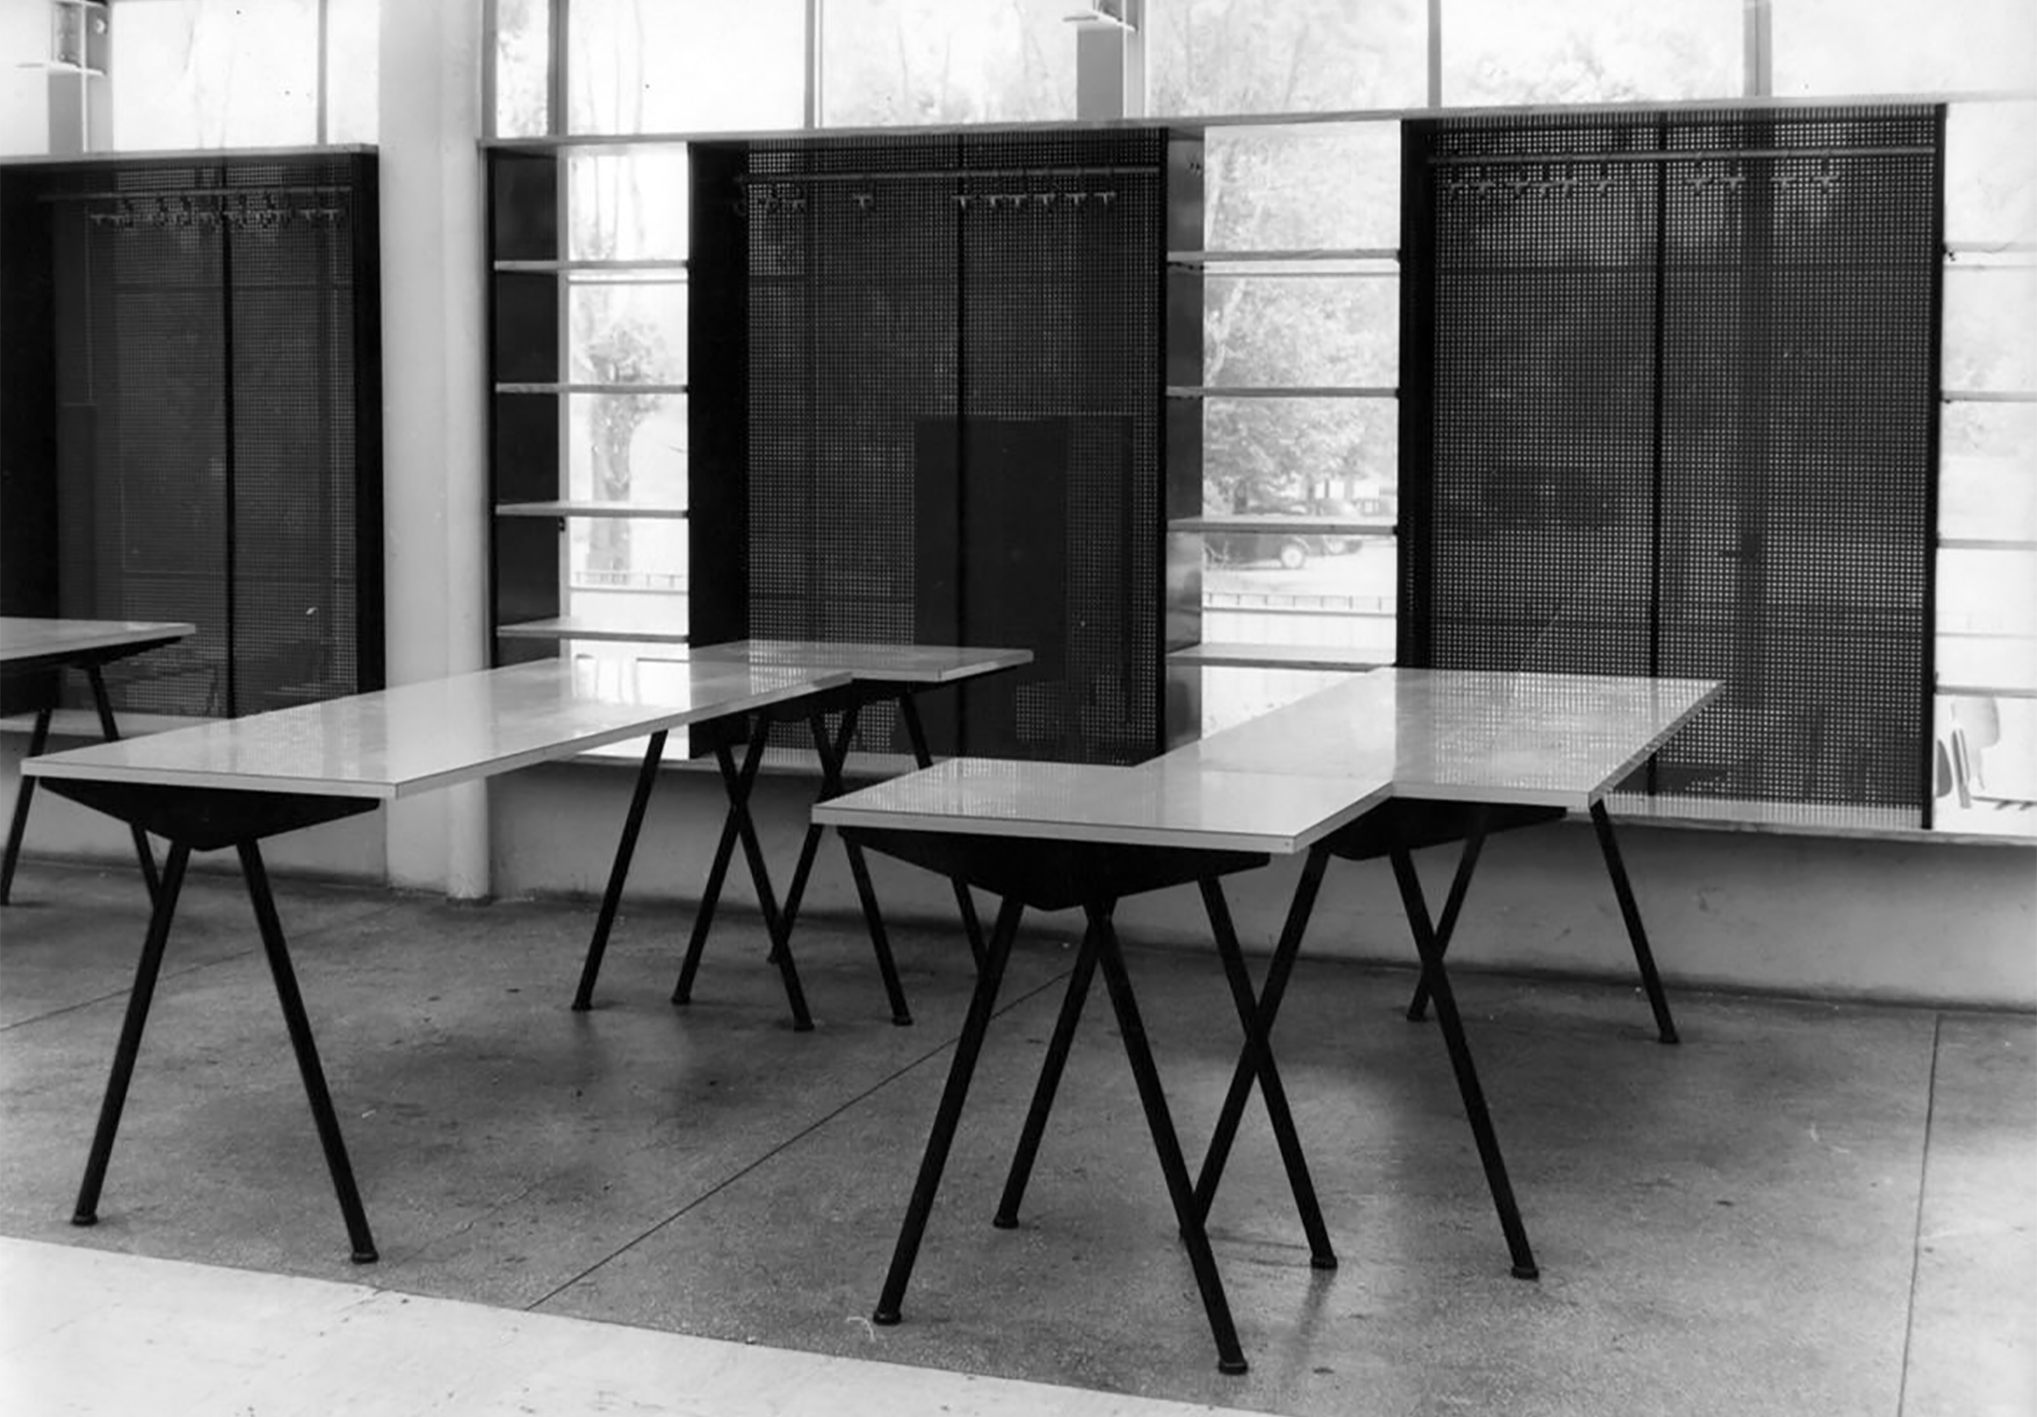 Cité universitaire, Antony (E. Beaudouin et P. Fournier, arch., 1951-1957). Le restaurant universitaire équipé de tables Compas, c. 1956.